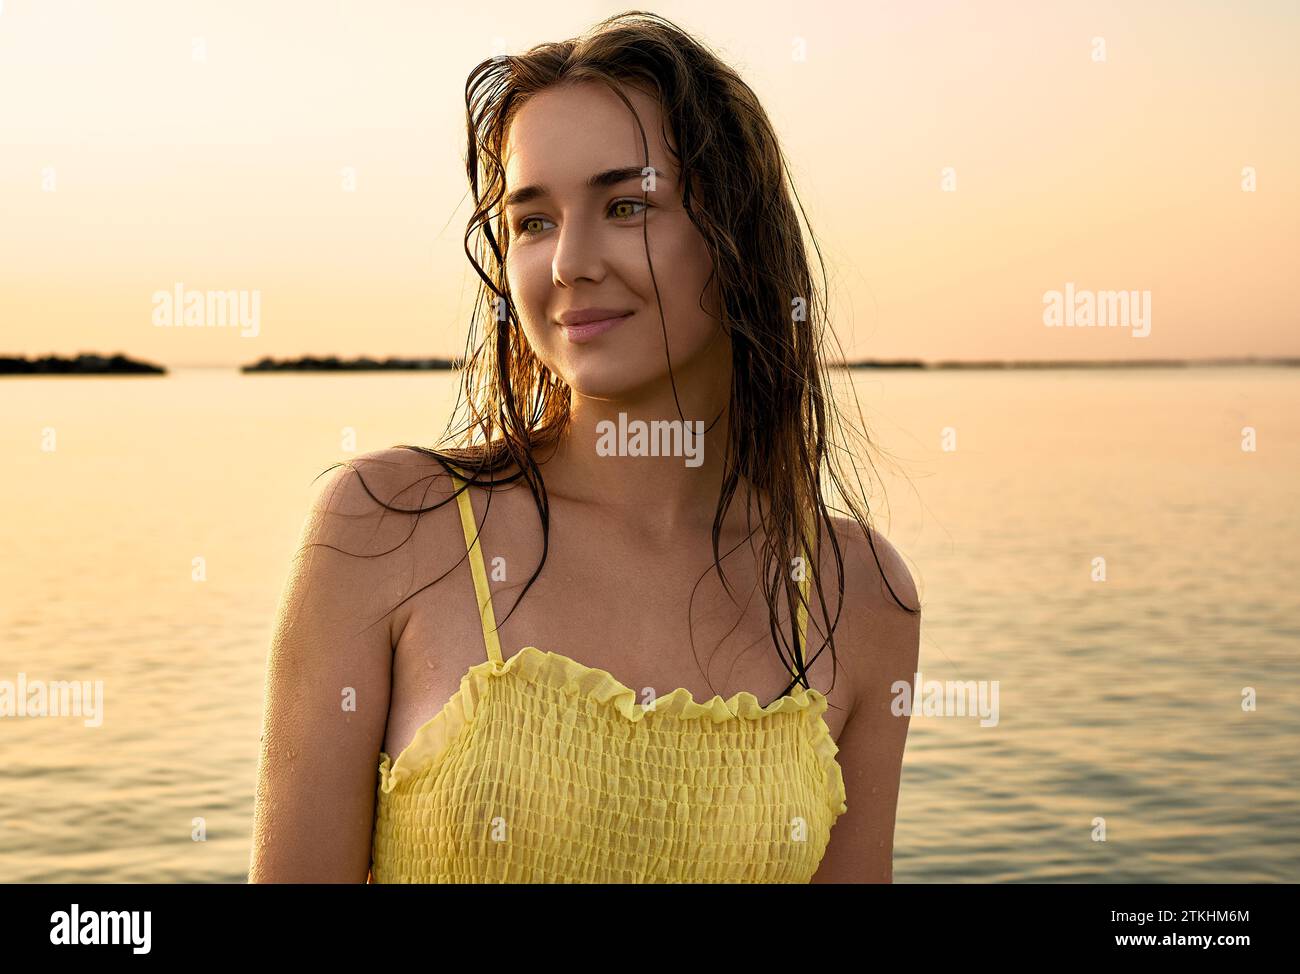 Ritratto ravvicinato di una giovane donna con un vestito giallo all'alba sullo sfondo del mare. La donna cammina in riva al mare Foto Stock